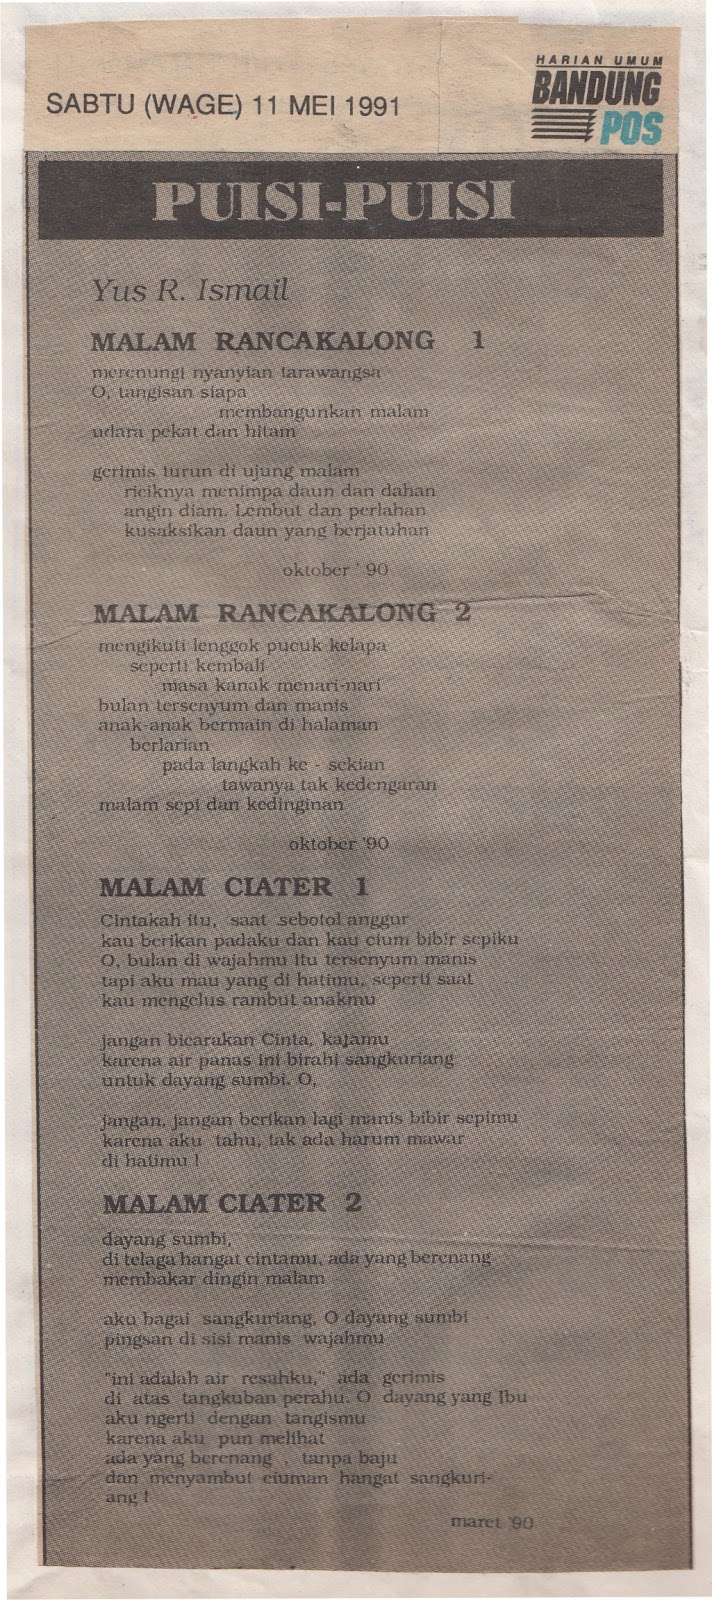 Puisi Bandung Pos: MALAM RANCAKALONGProses Kreatif Menulis 